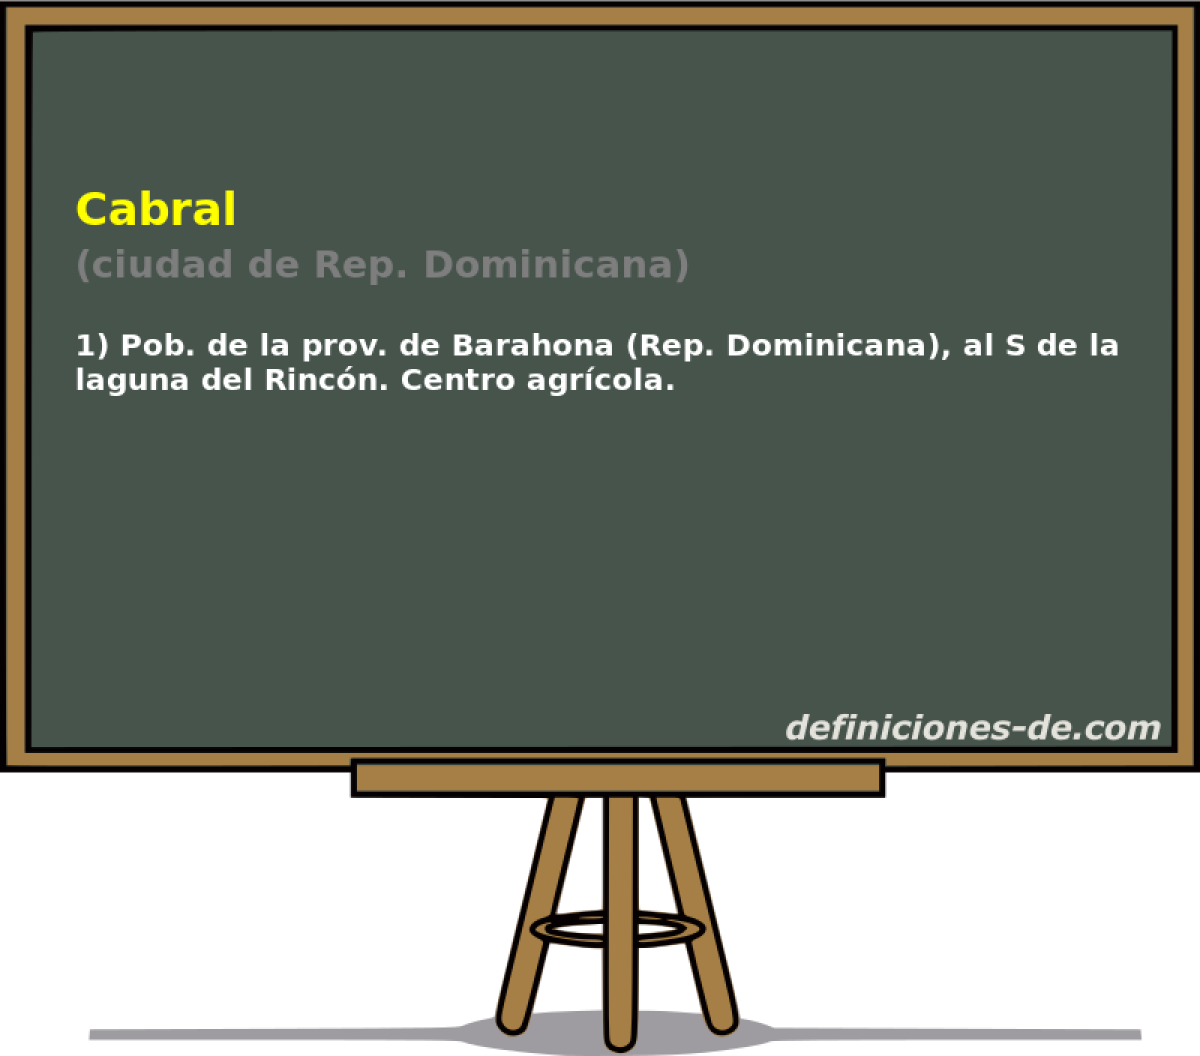 Cabral (ciudad de Rep. Dominicana)